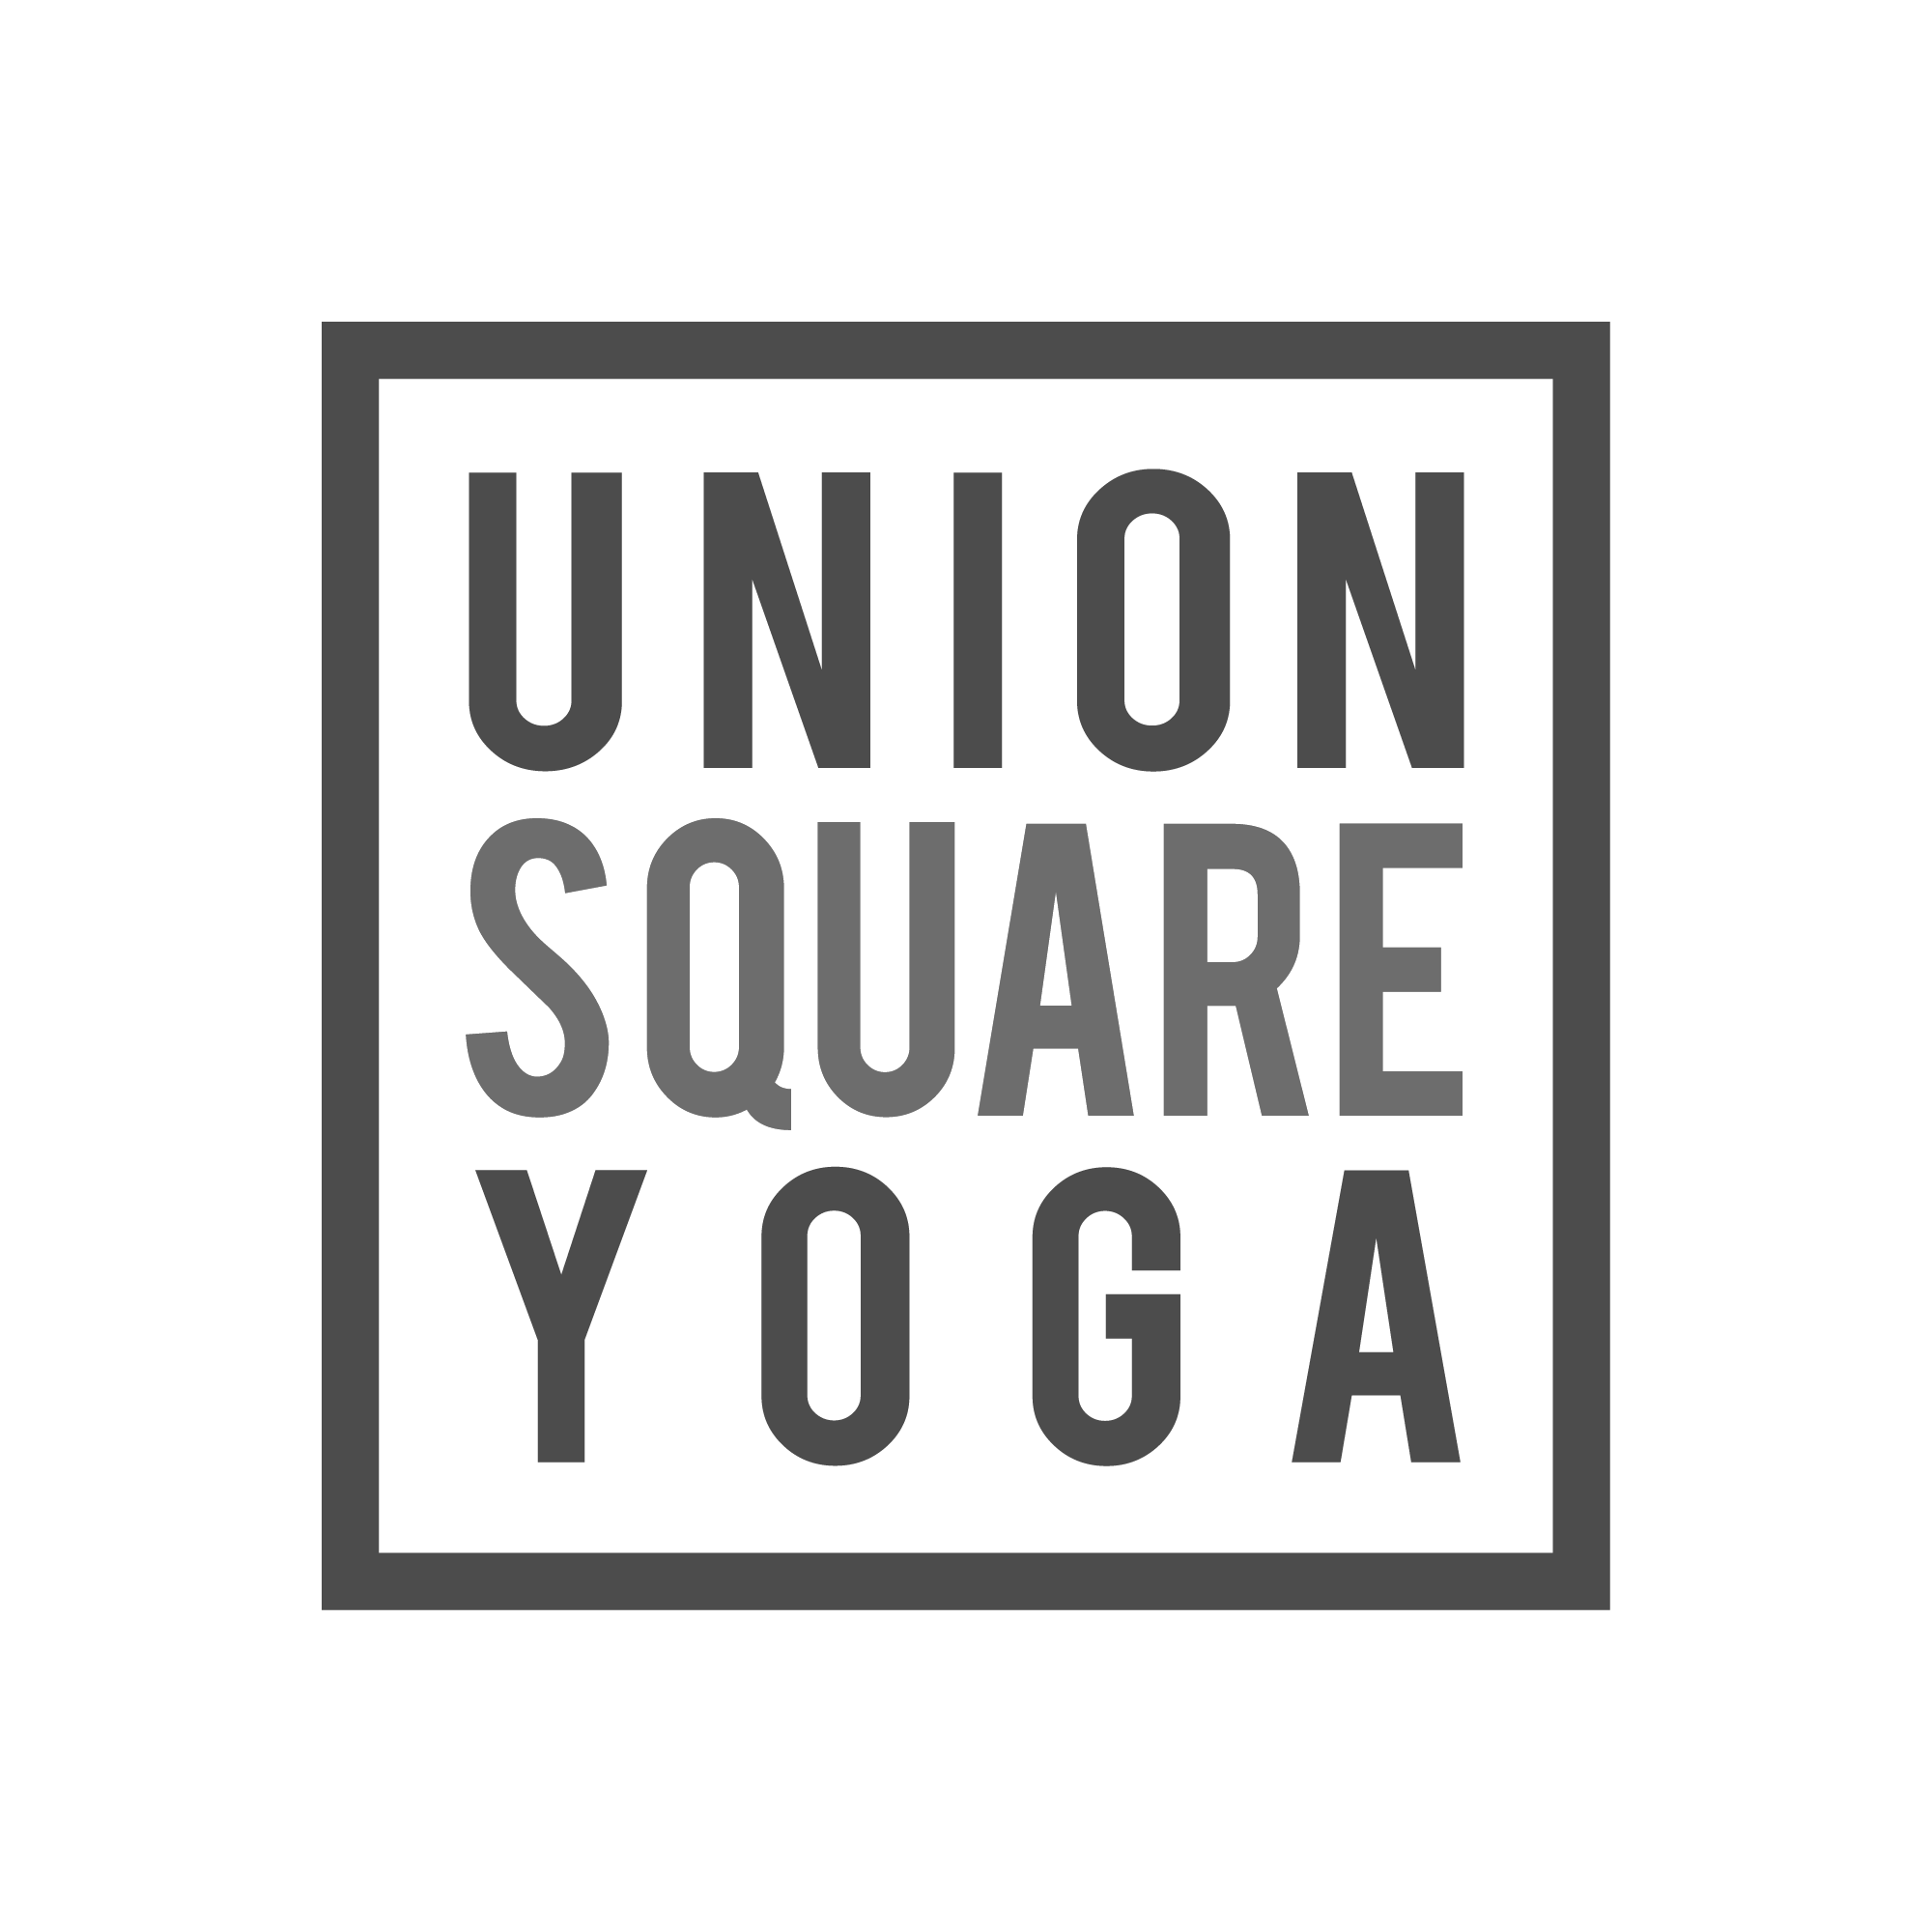 Union Square Yoga 